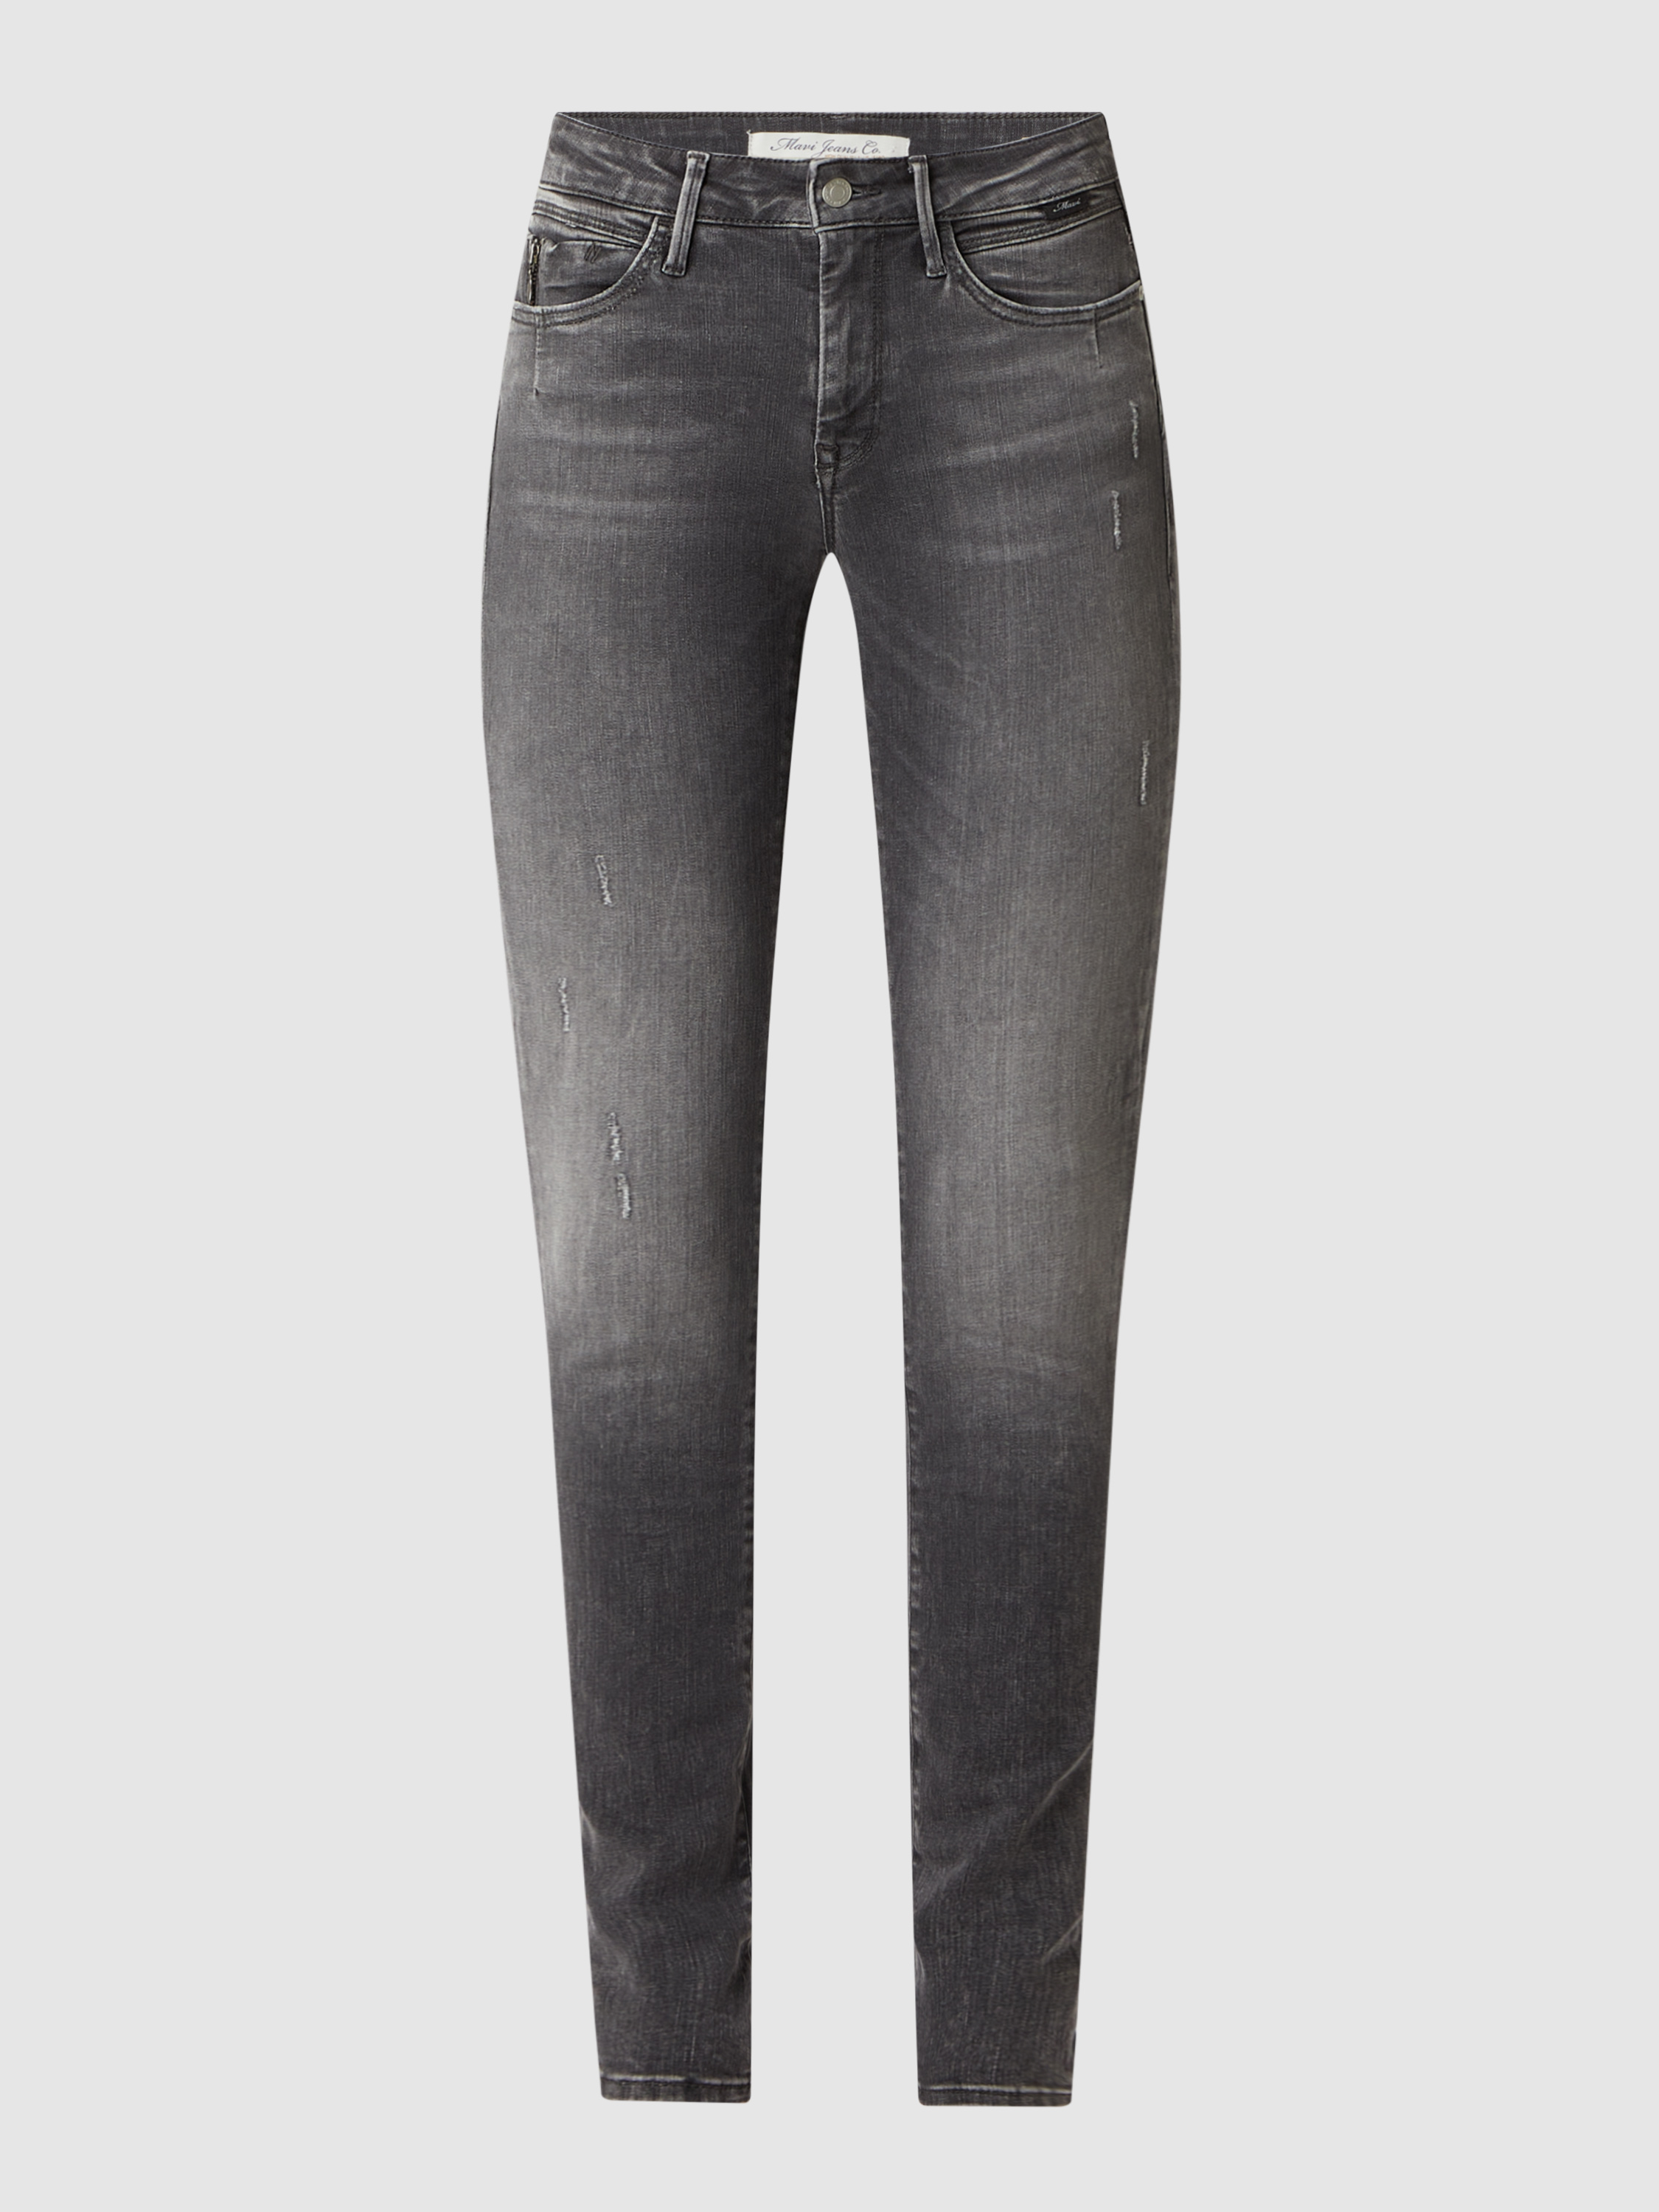 Джинсы женские mavi jeans 1455295 серые 26/34 (доставка из-за рубежа)